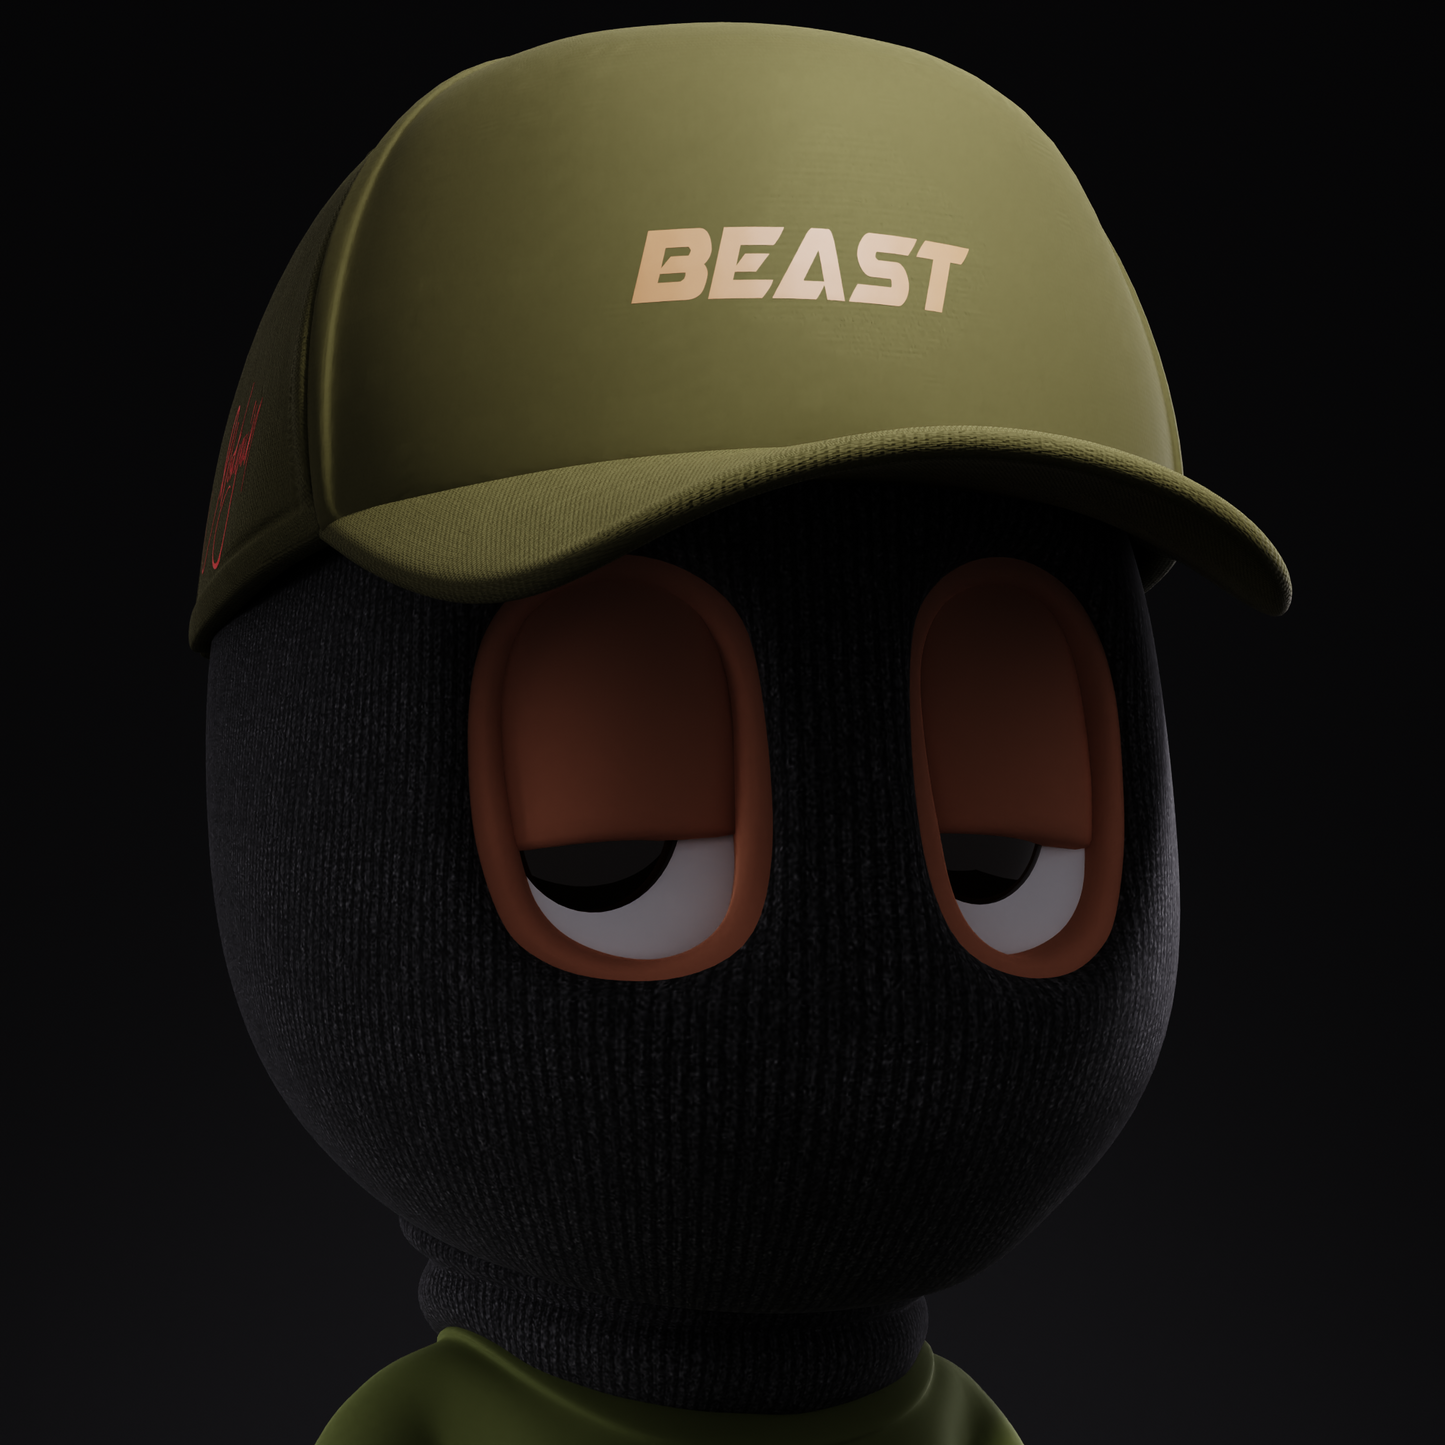 BeastWear "BEAST" Hat (Digital Download)